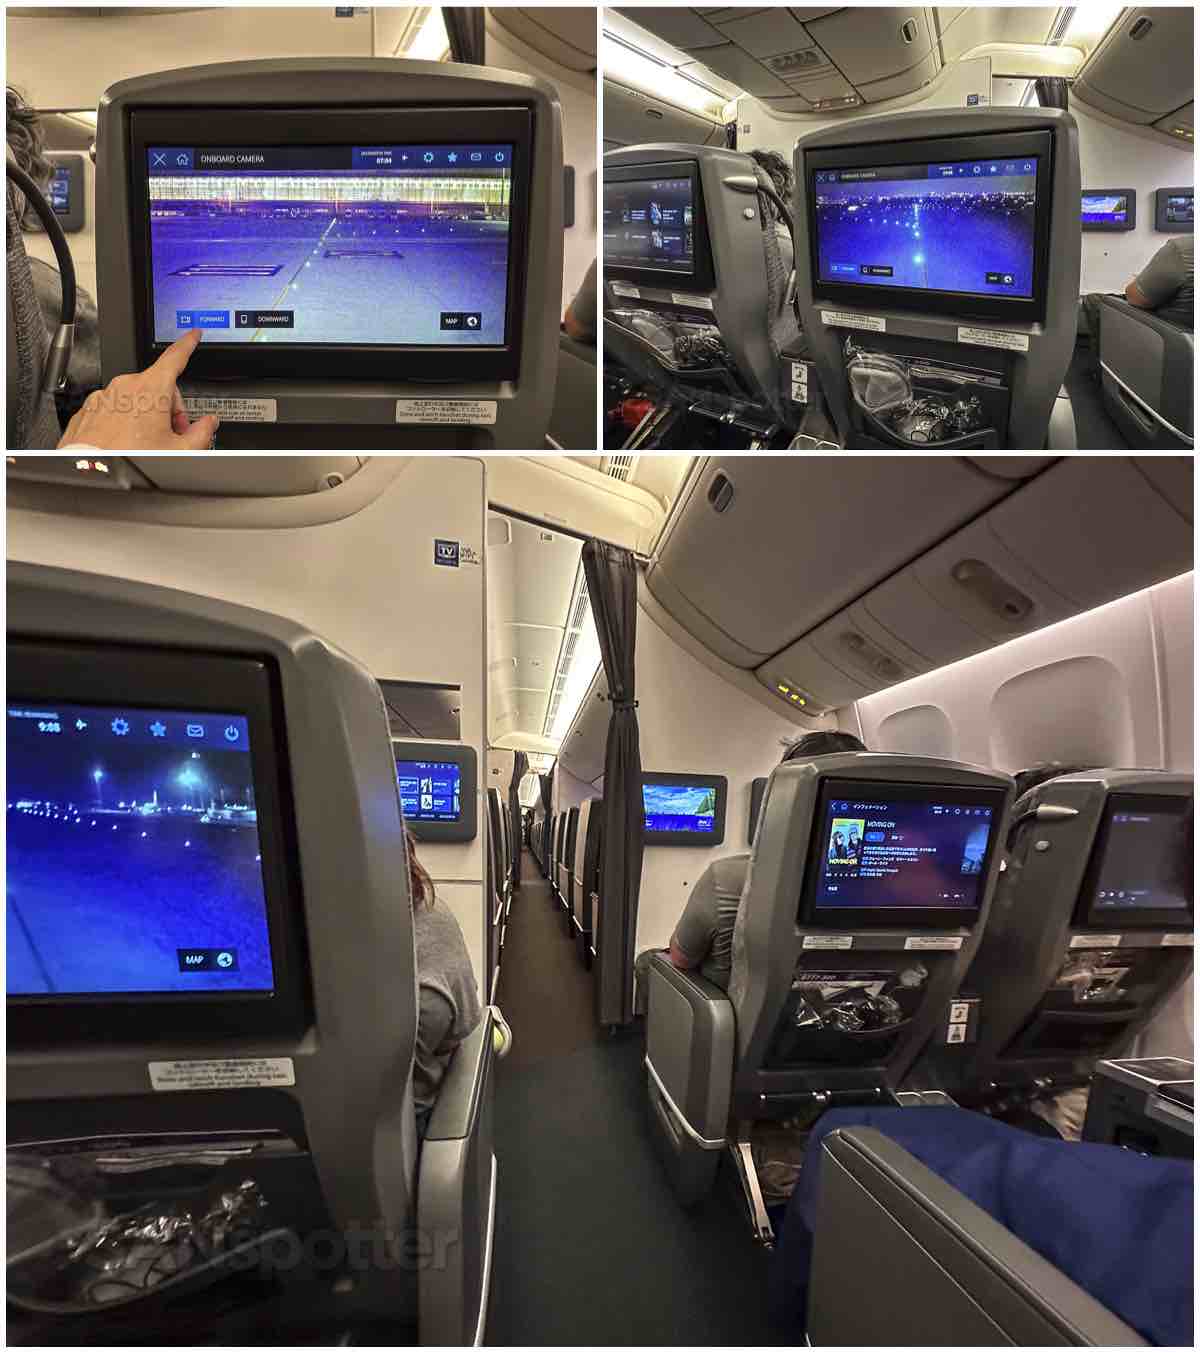 ANA 777-300ER premium economy forward facing camera